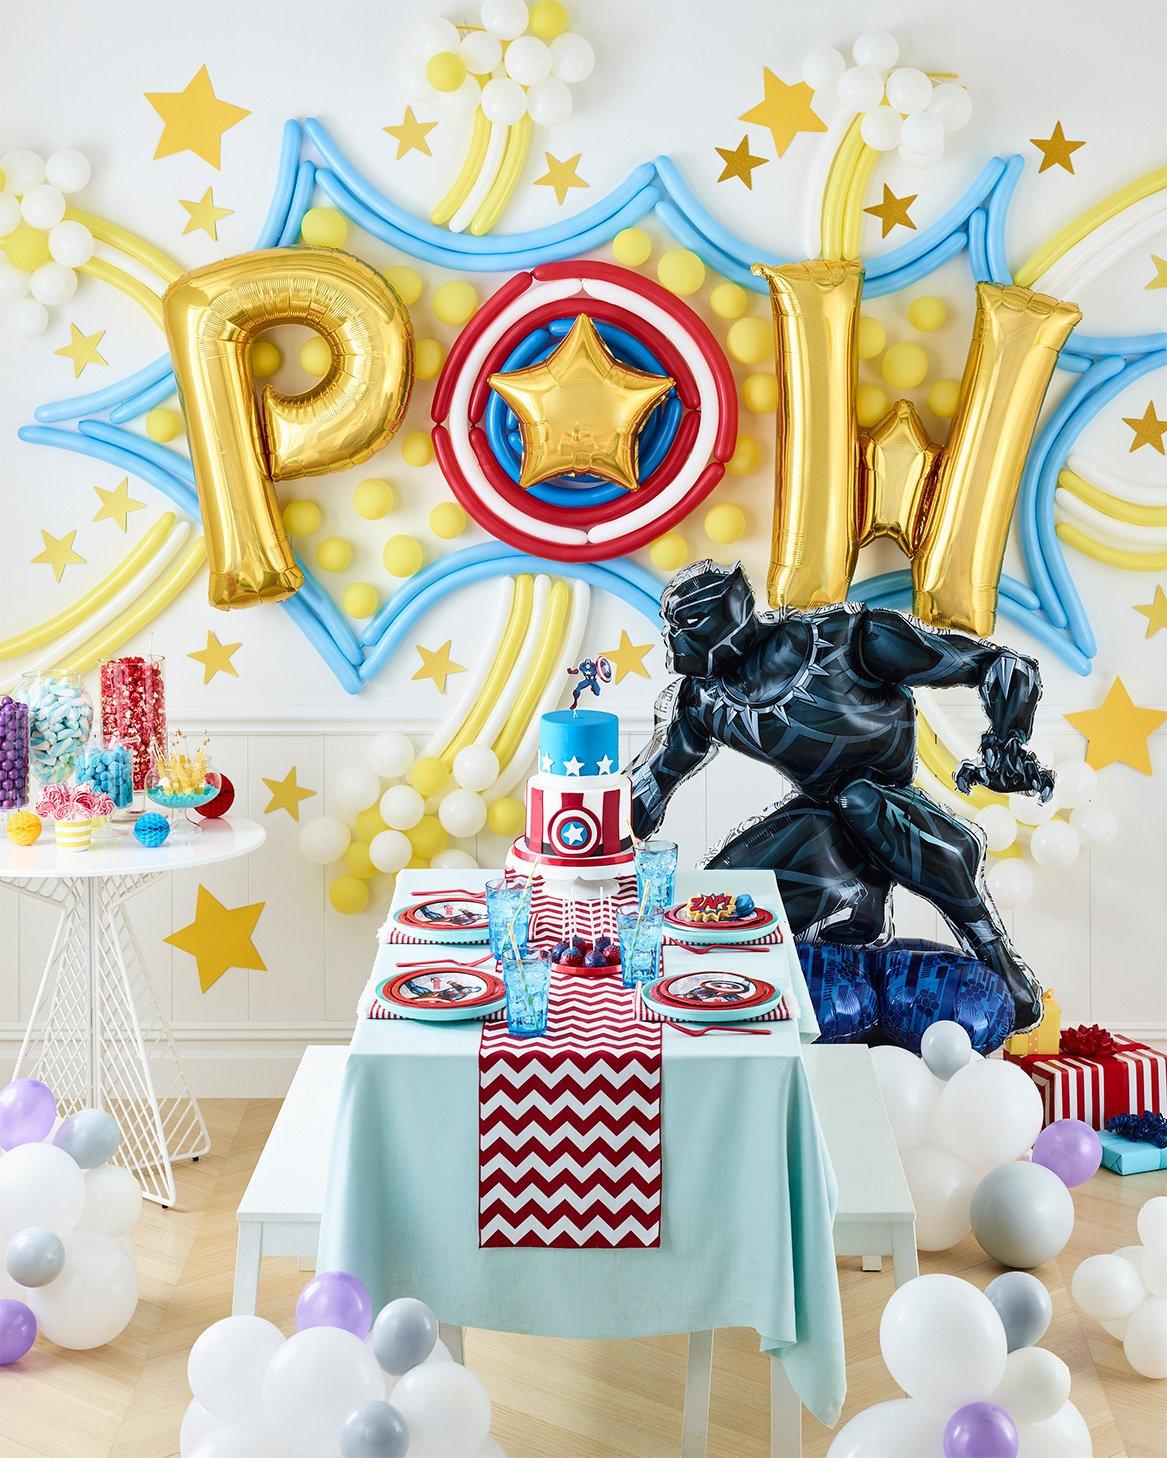 Builds Custom Superhero Pinatas for your kids birthdays!